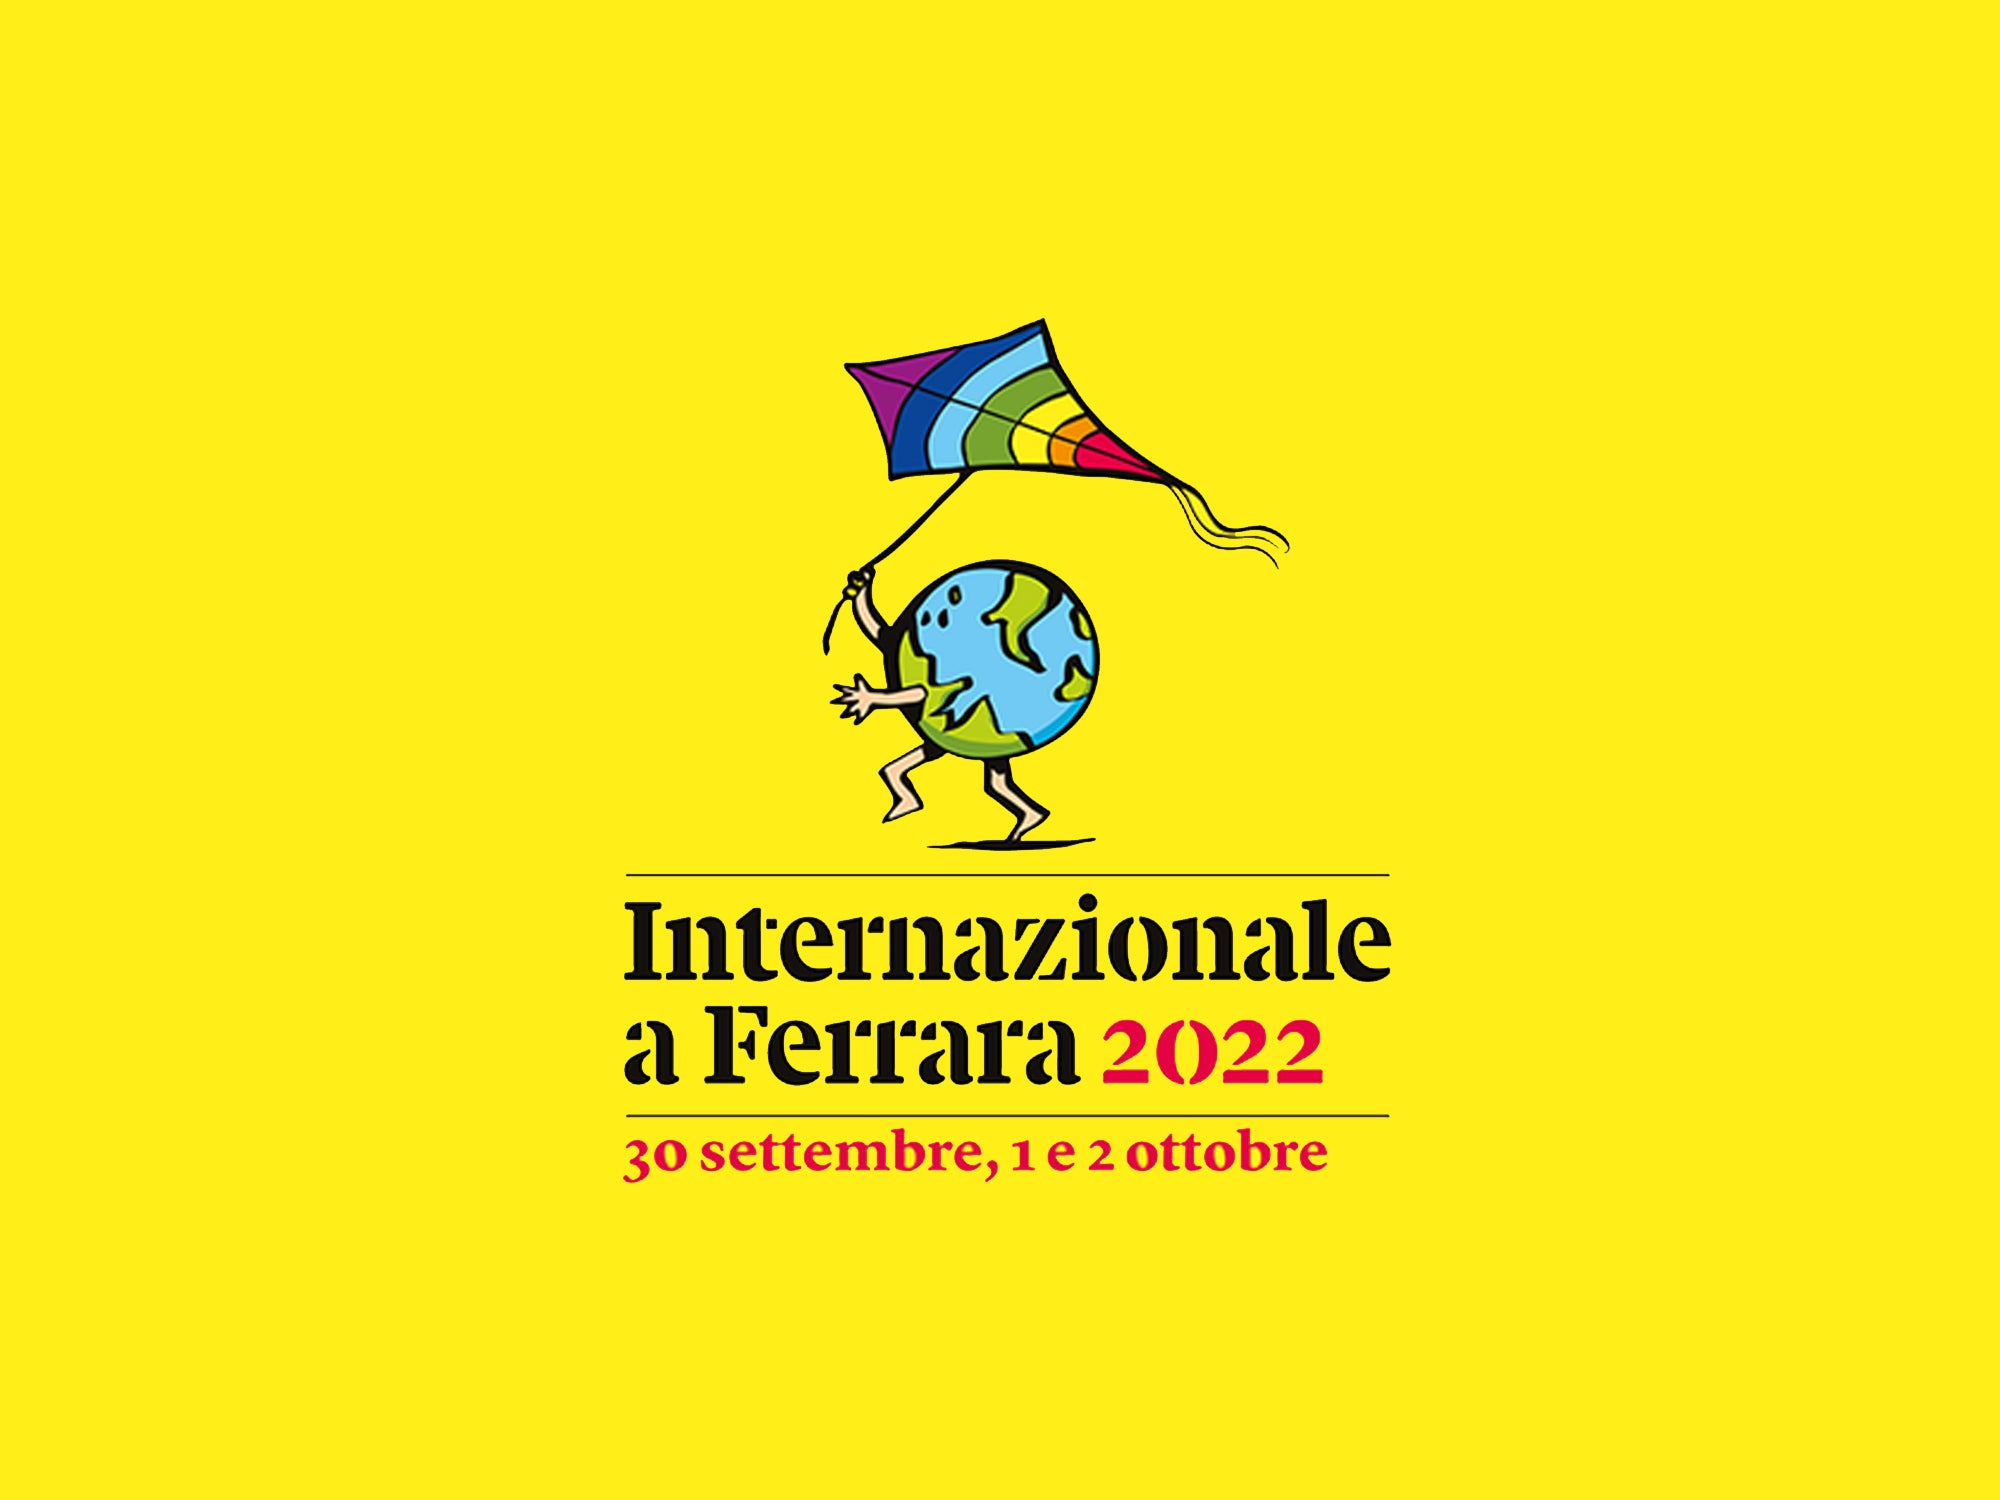 Alce Nero torna con un evento al Festival Internazionale a Ferrara